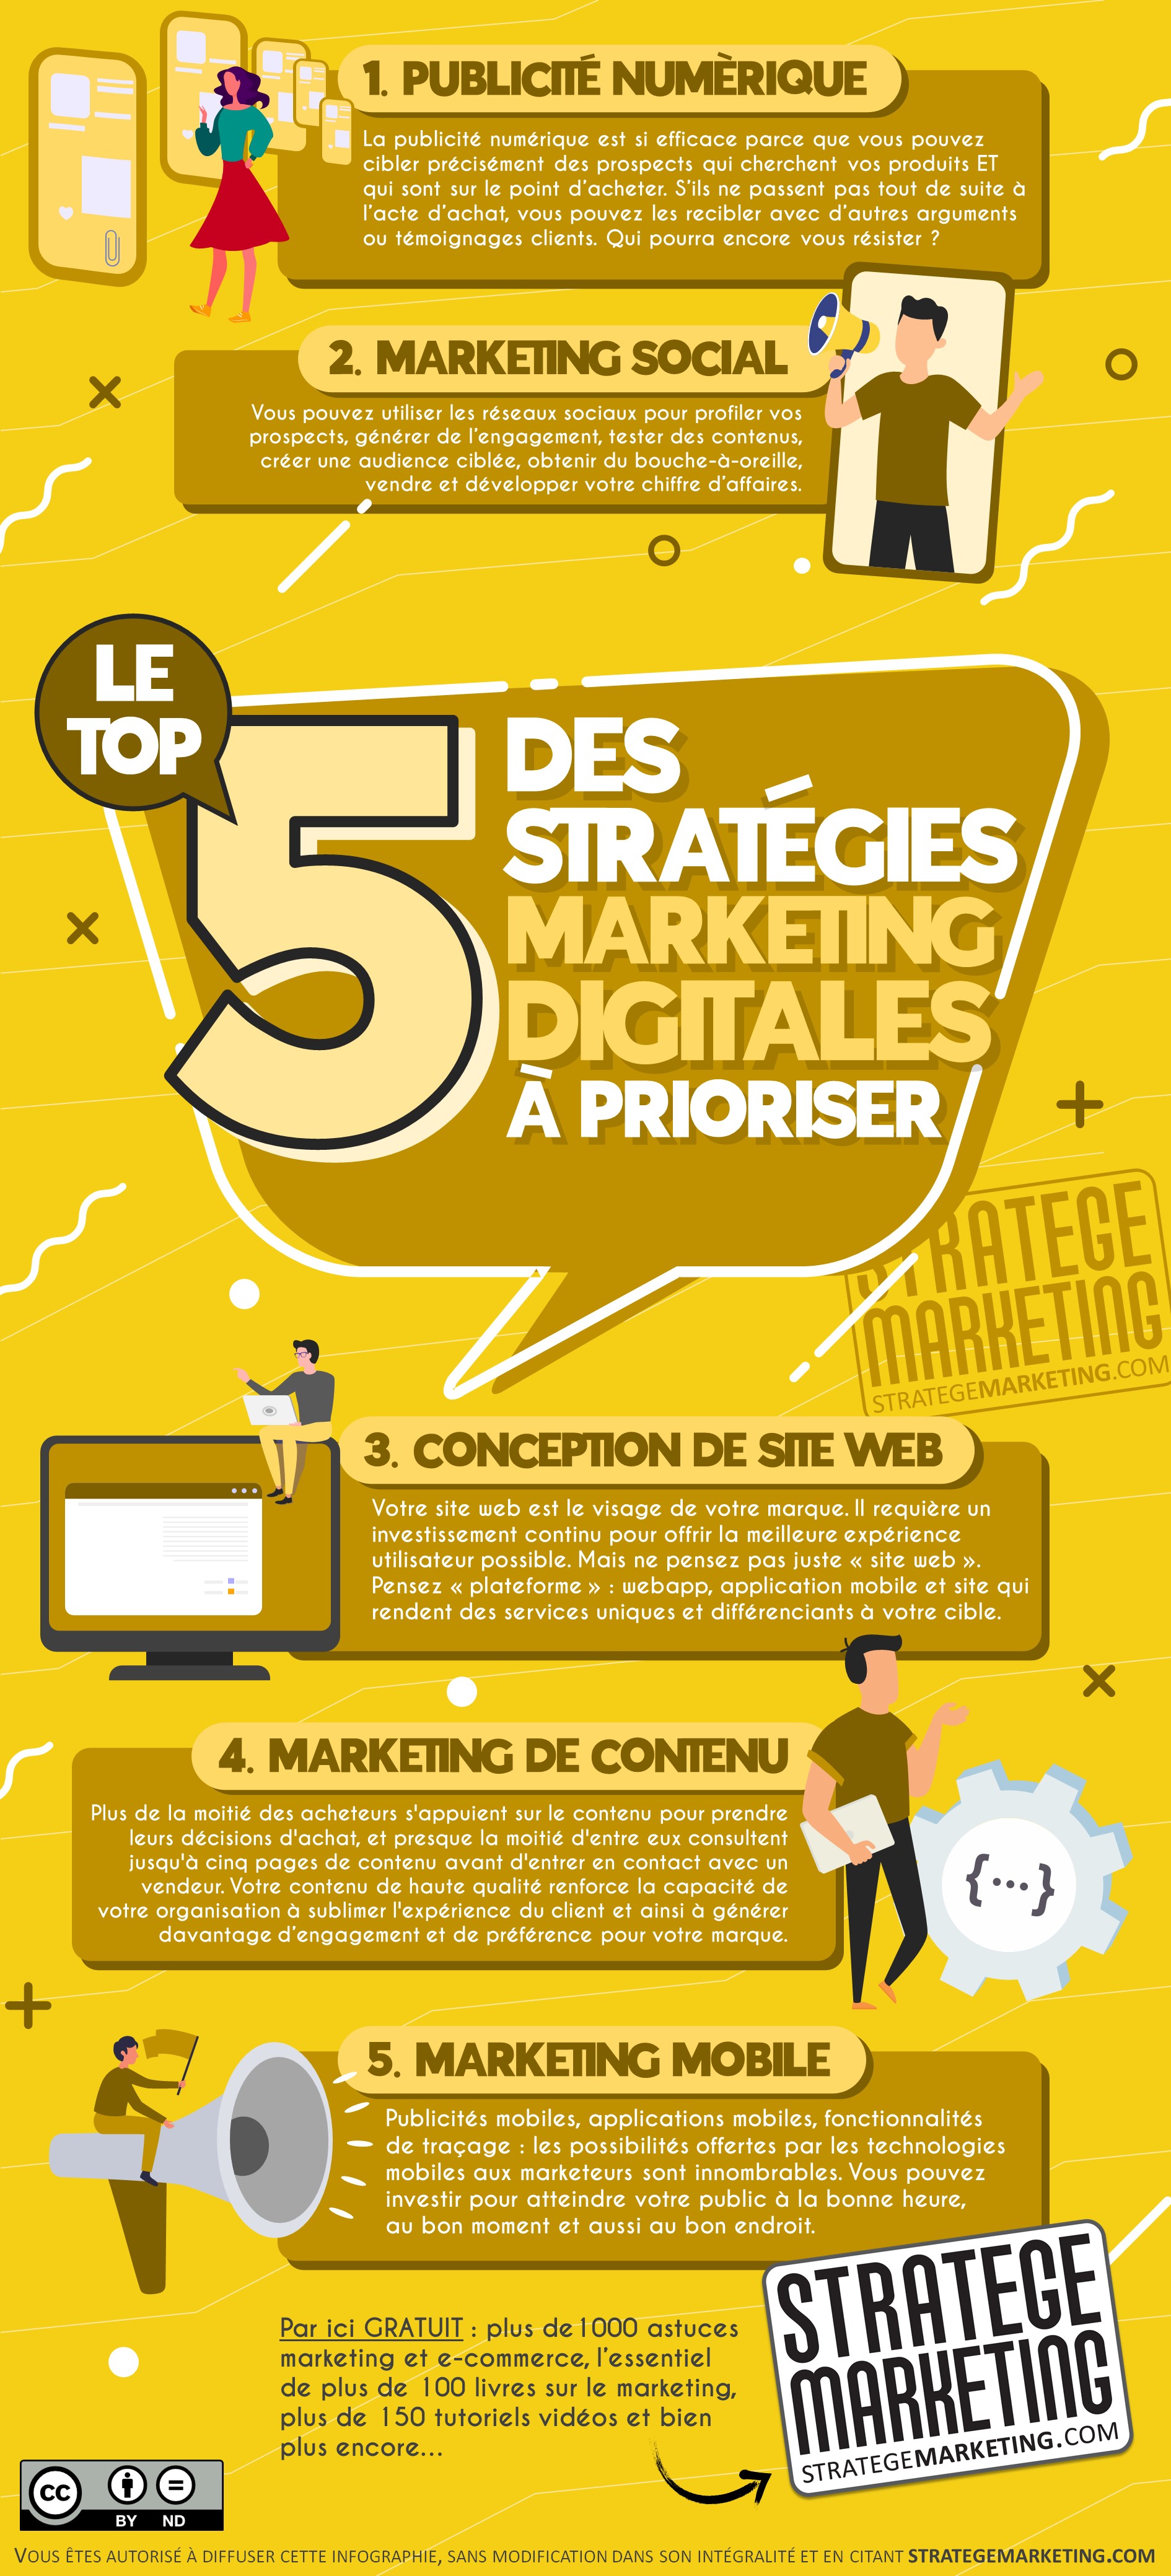 Le top 5 des stratégies marketing digitales à prioriser (infographie)